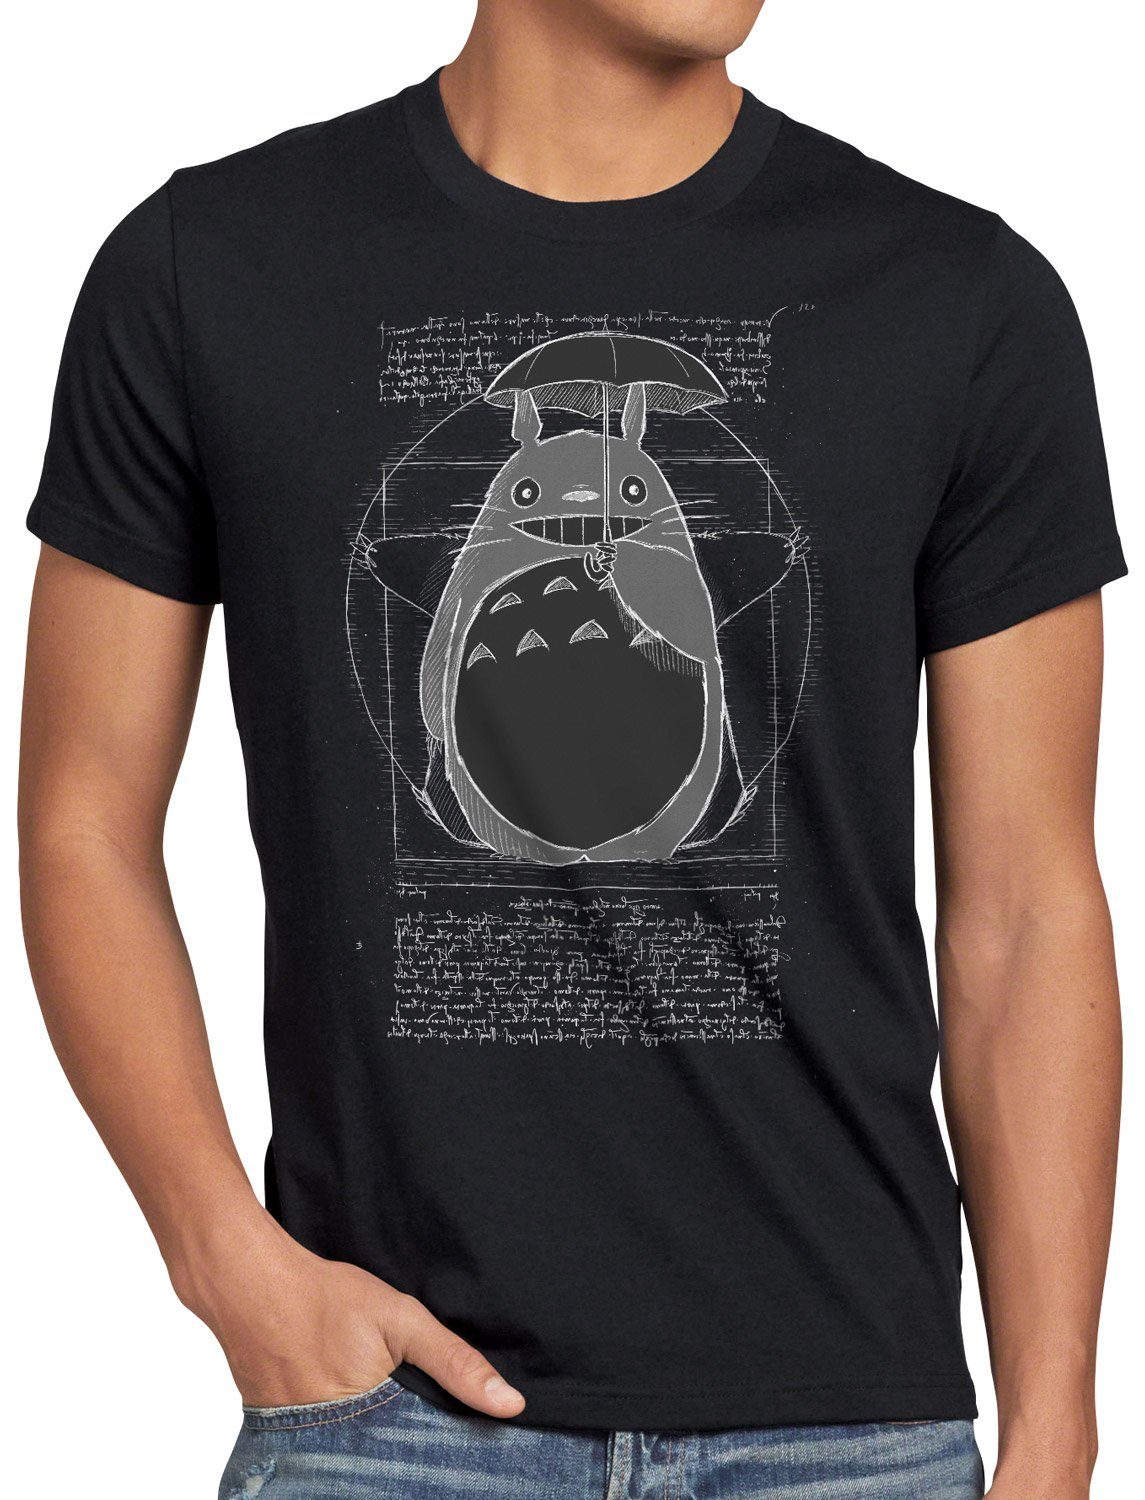 Print-Shirt mein nachbar schwarz Totoro Vitruvianischer neko anime style3 T-Shirt no Herren tonari